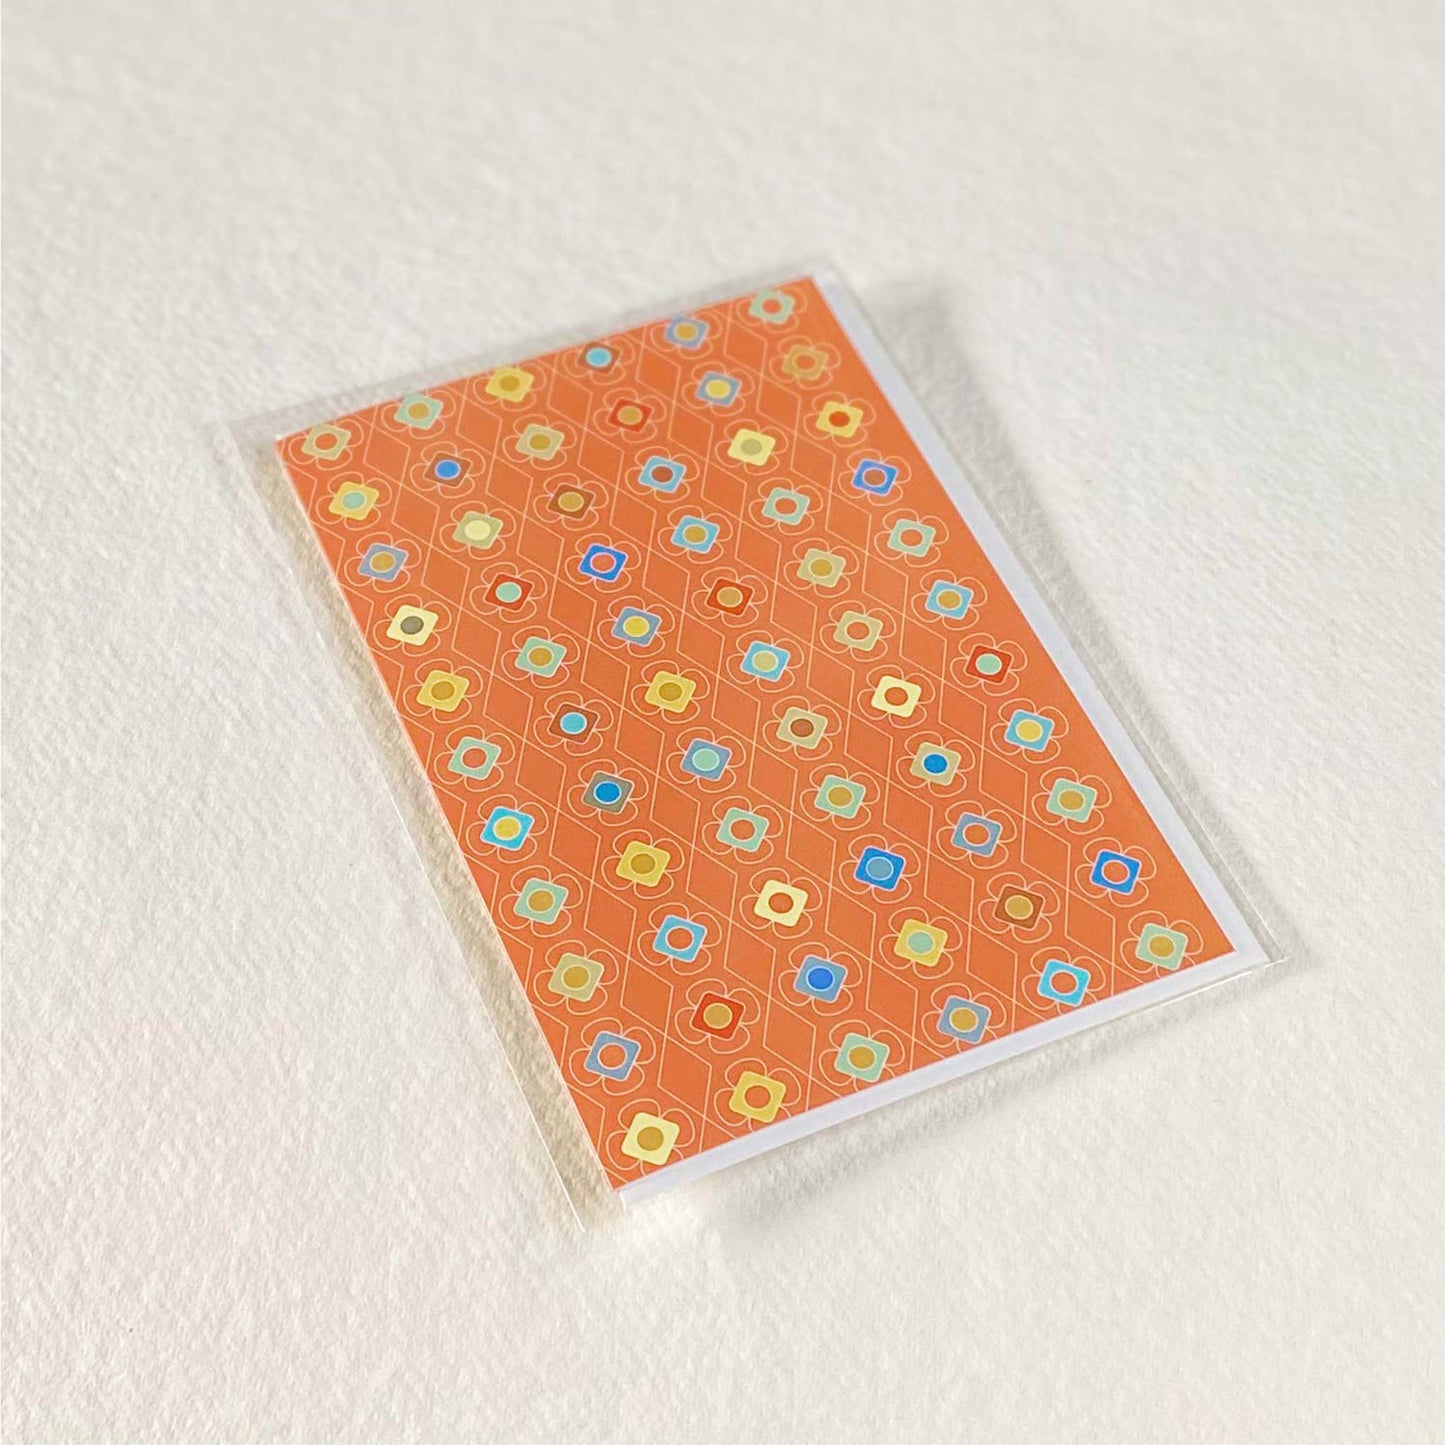 Productafbeelding, foto wenskaart "kleur carrousel oranje" in zijn verpakking liggend op een achtergrond